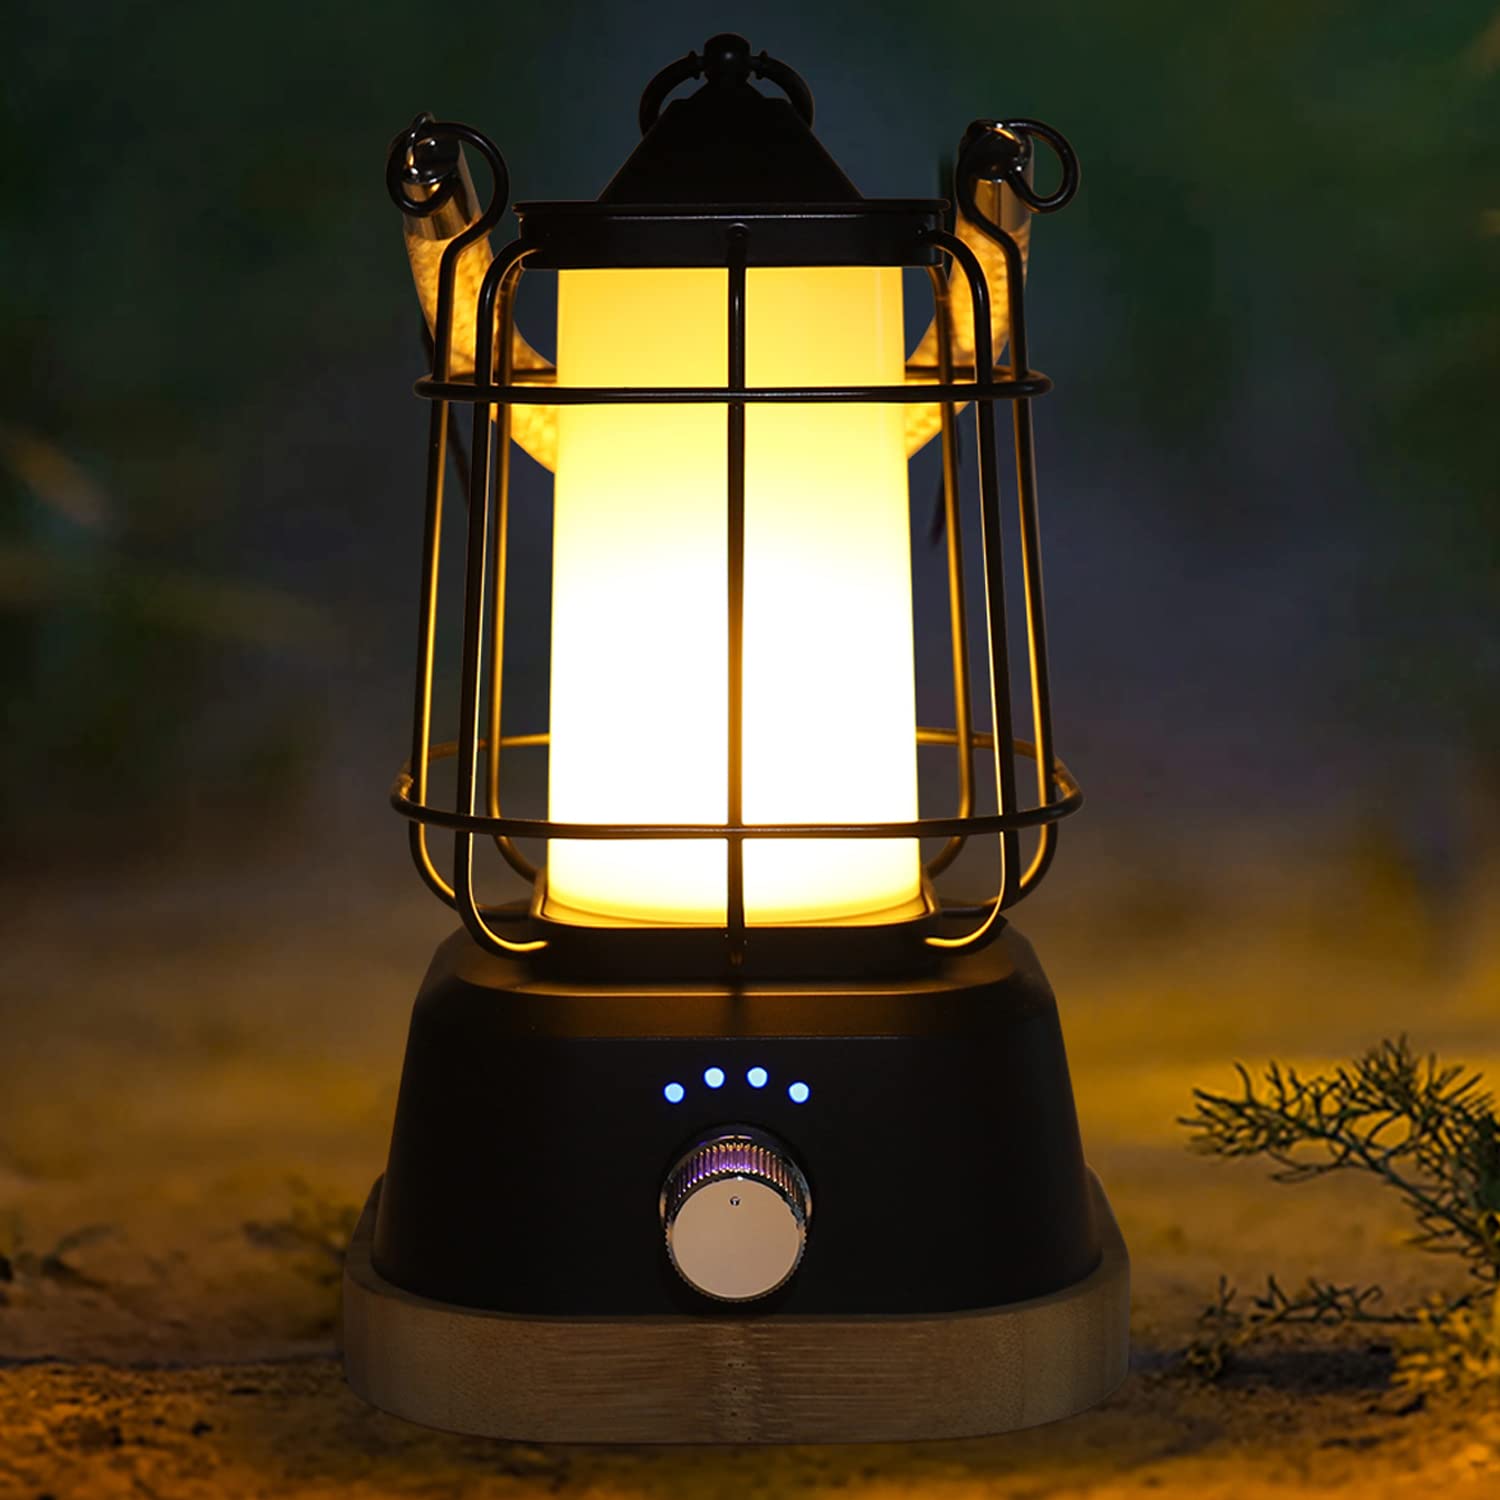 ZWOOS LED Campinglampe【400 lm, IP44, bis zu 80h Leuchtdauer 】stufenlos dimmbar, Farbtemperatur einstellbar, Drei Lichtfarben,wiederaufladbare USB Akku Outdoor Lampe mit Hanfseil und Bambussockel